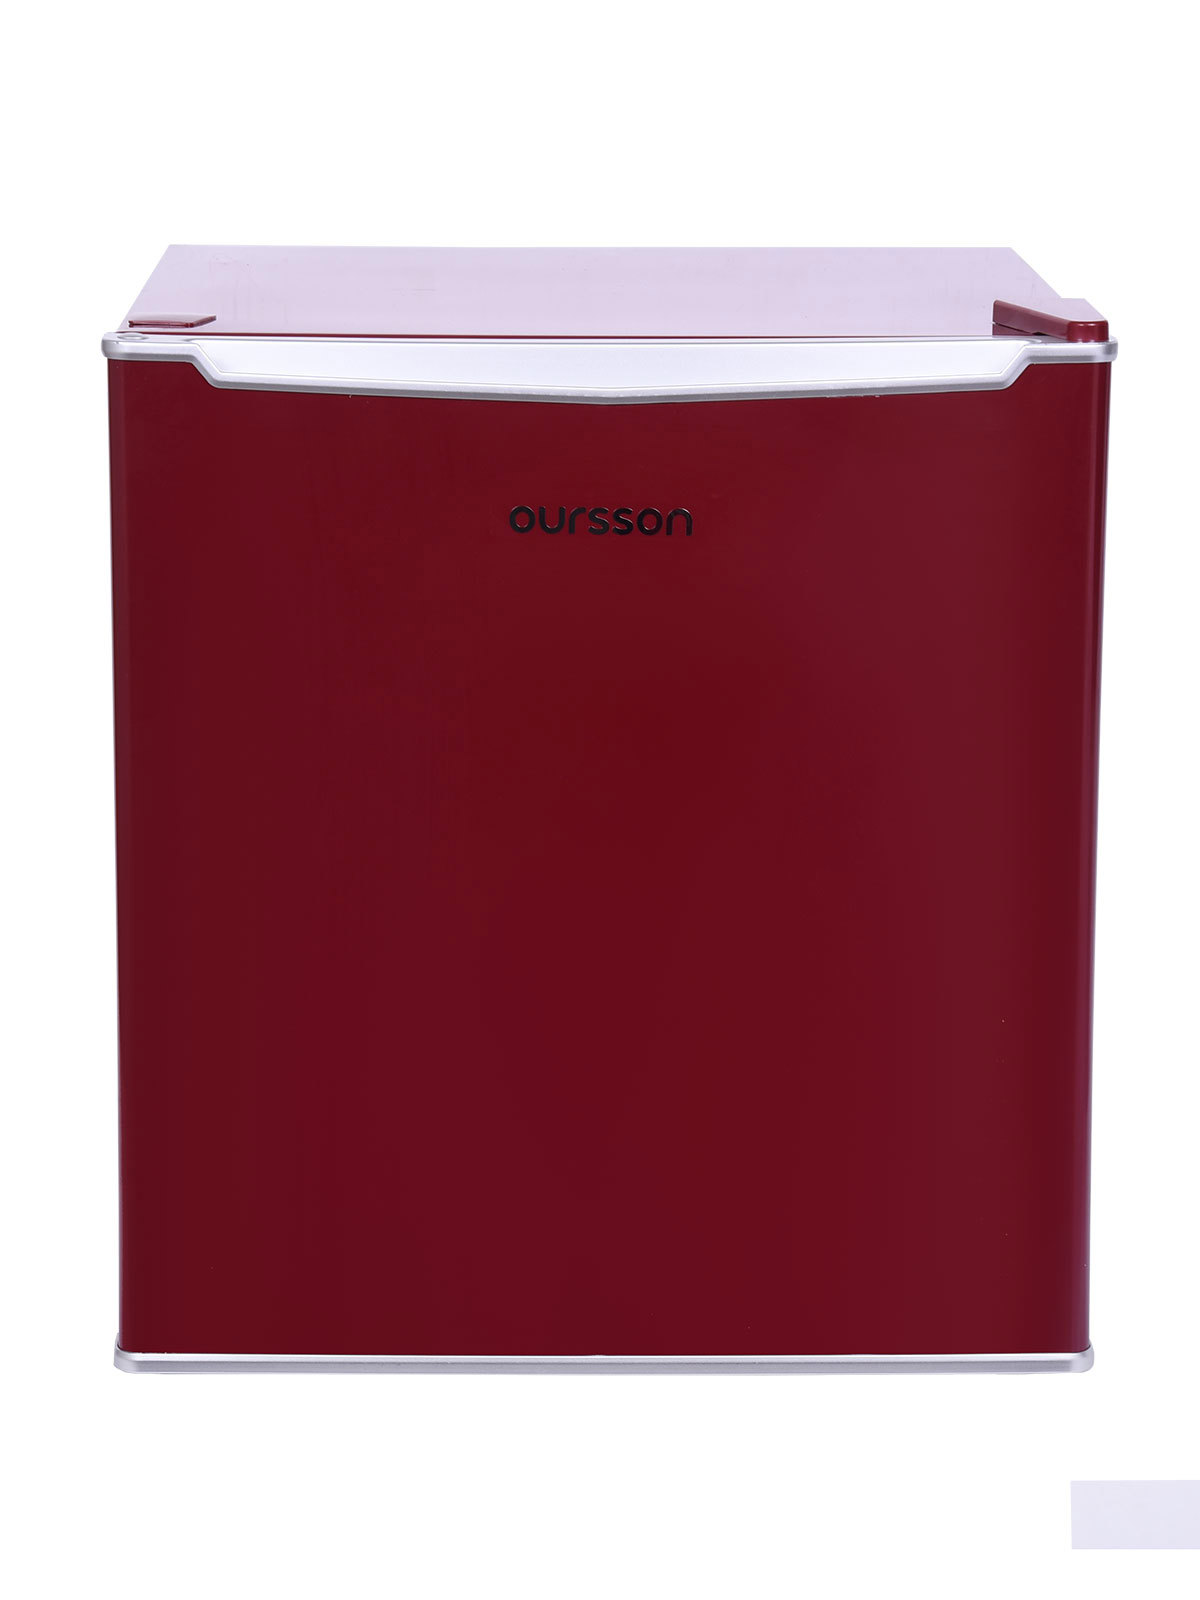 90007220 Отдельностоящий холодильник RF0480 48.5x49.5 см цвет бордовый STLM-0081883 OURSSON